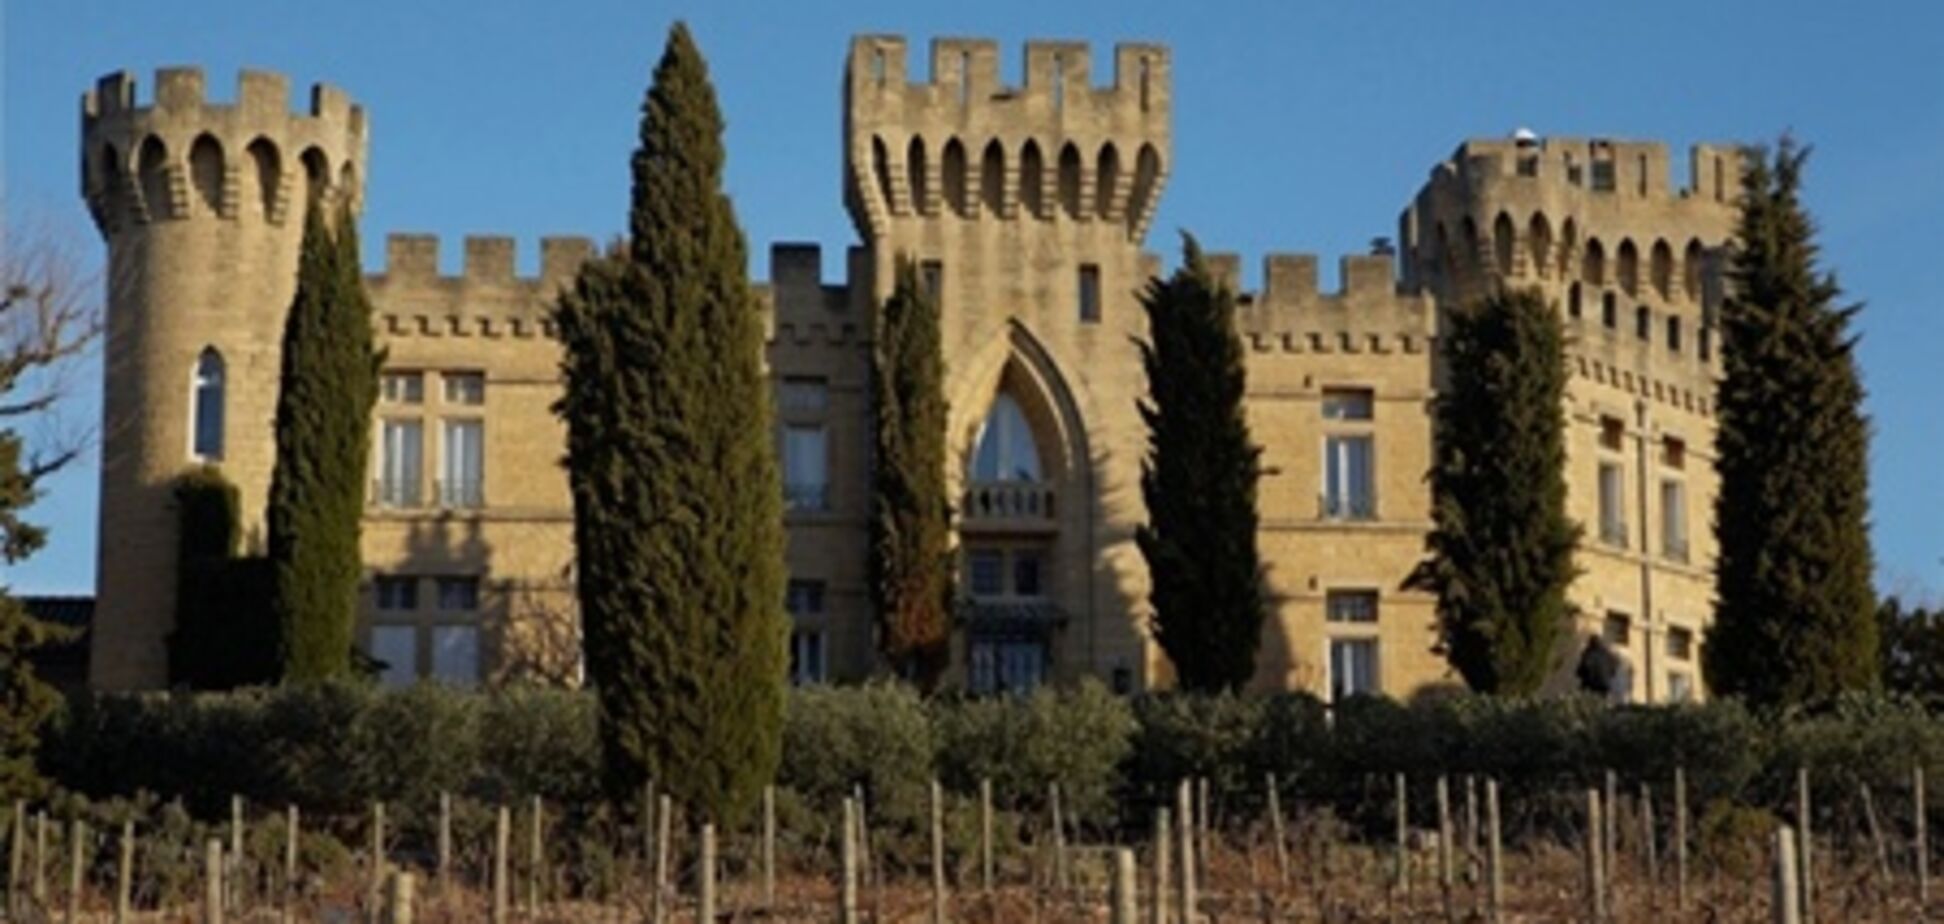 Отдых по-королевски: 5 впечатляющих замков-отелей по доступной цене